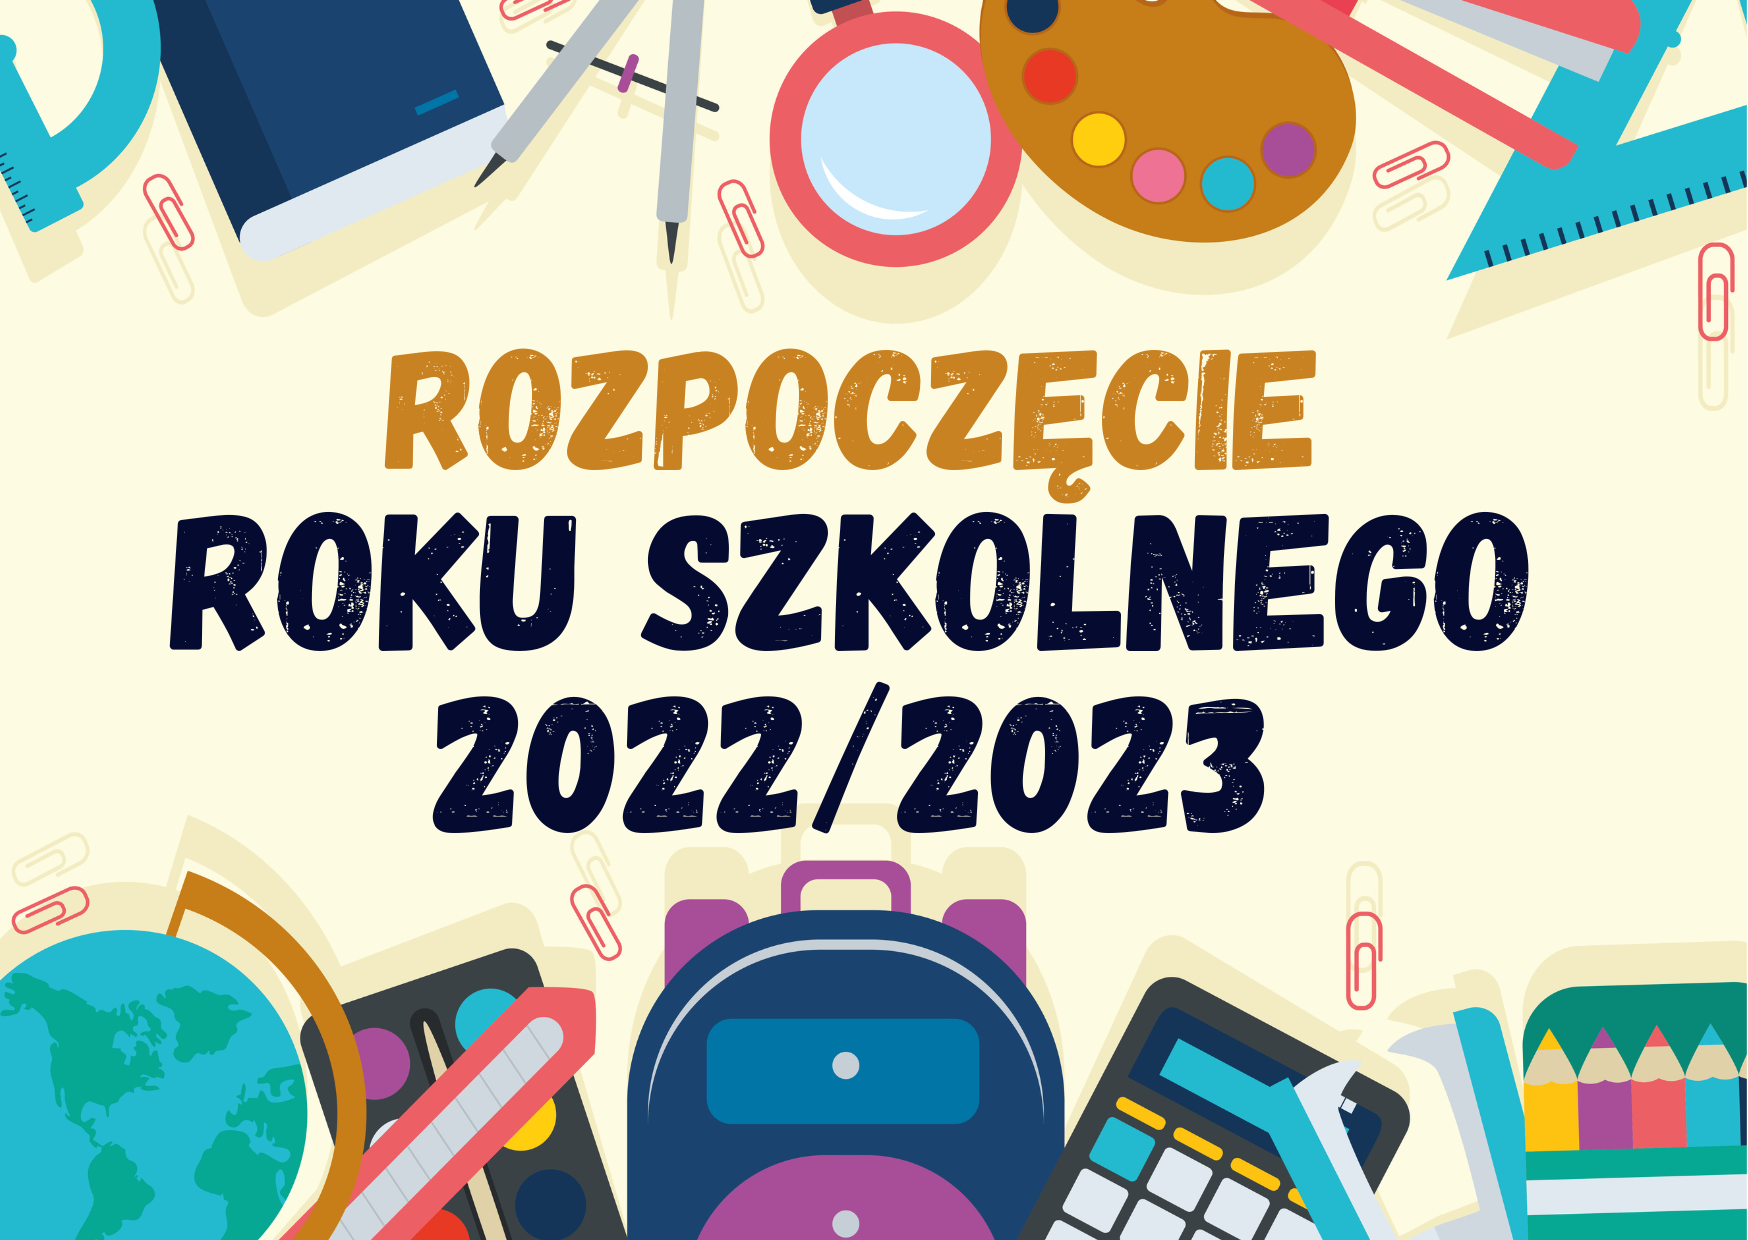 Uroczyste rozpoczęcie roku szkolnego 2022/2023 – Zespół Szkół nr 1 im.  Adama Mickiewicza w Lublińcu